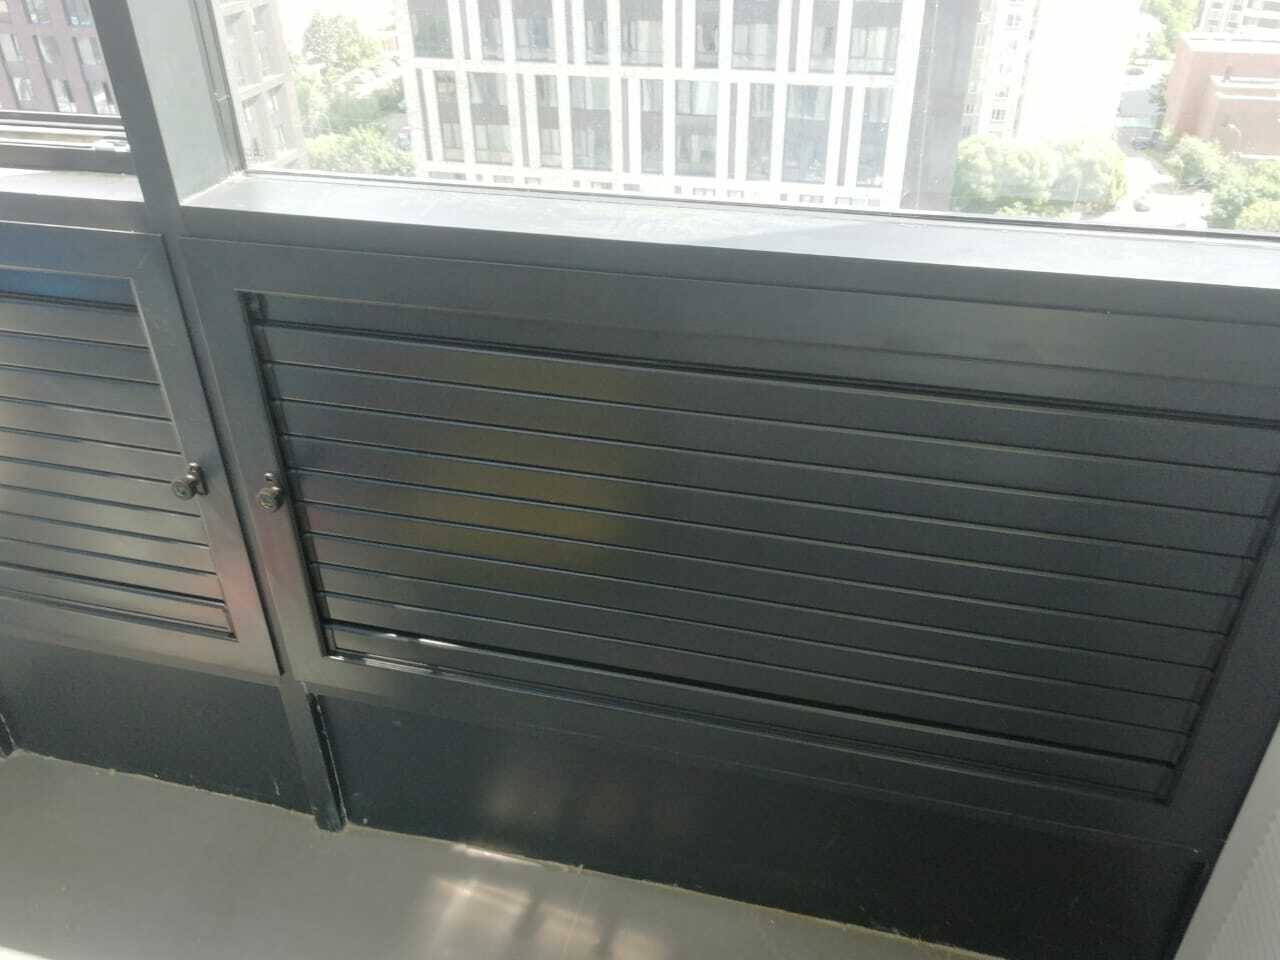 Как утеплить вентиляционную решетку на балконе? Устанавливаем вентрешетки с регулировкой жалюзи и утеплением.